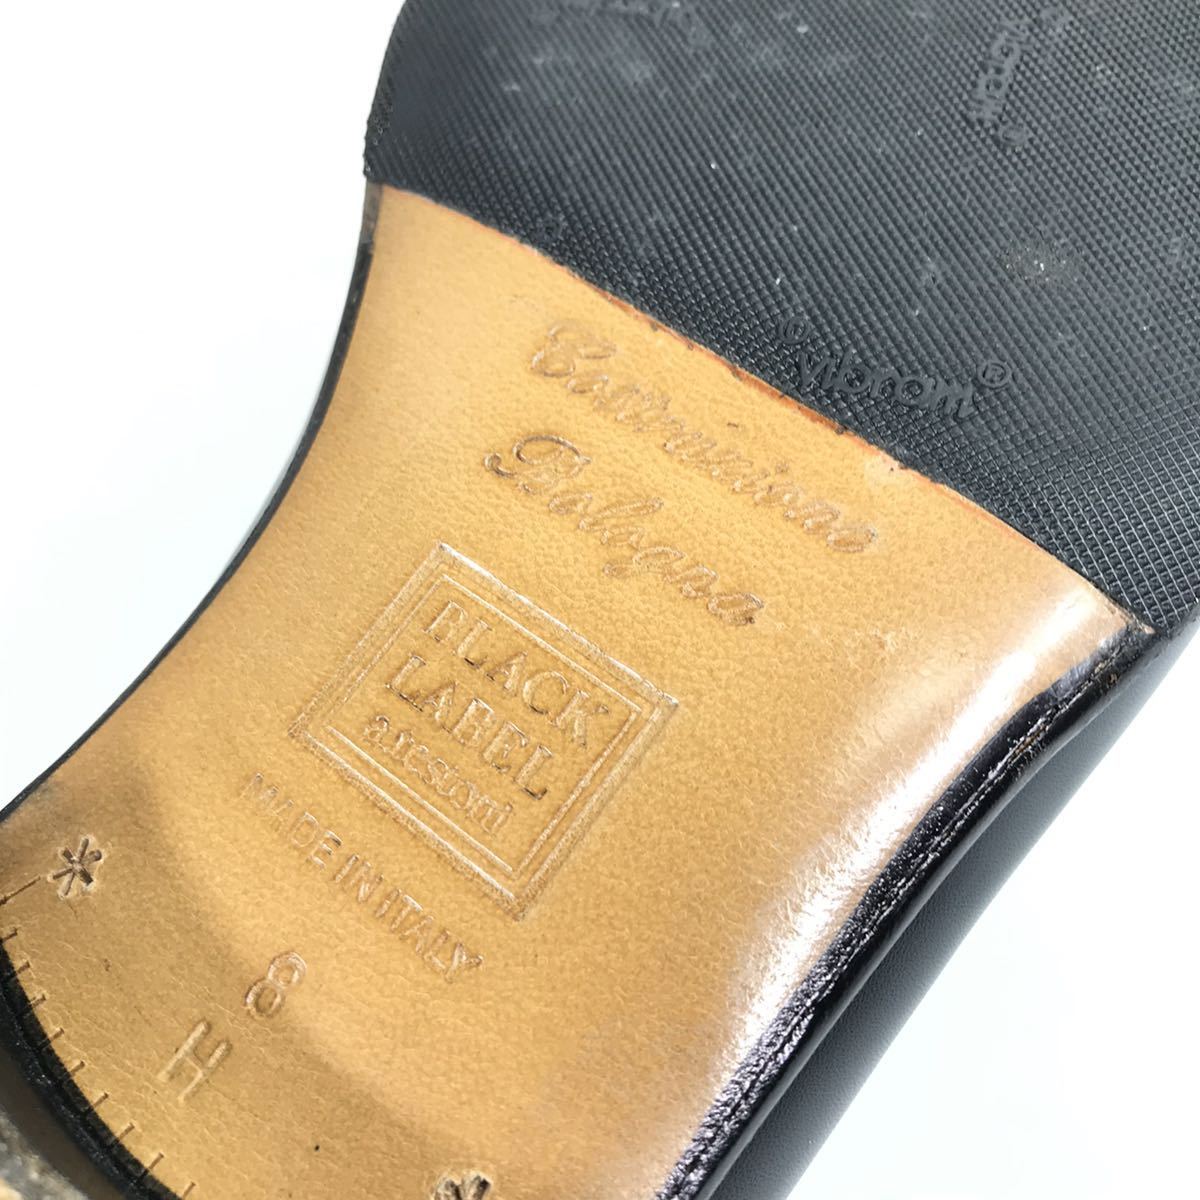  прекрасный товар [a* тест -ni] подлинный товар a.testoni обувь 27.5cm чёрный o- -тактный нога туфли без застежки бизнес обувь Ostrich . птица мужской сделано в Италии 8 H